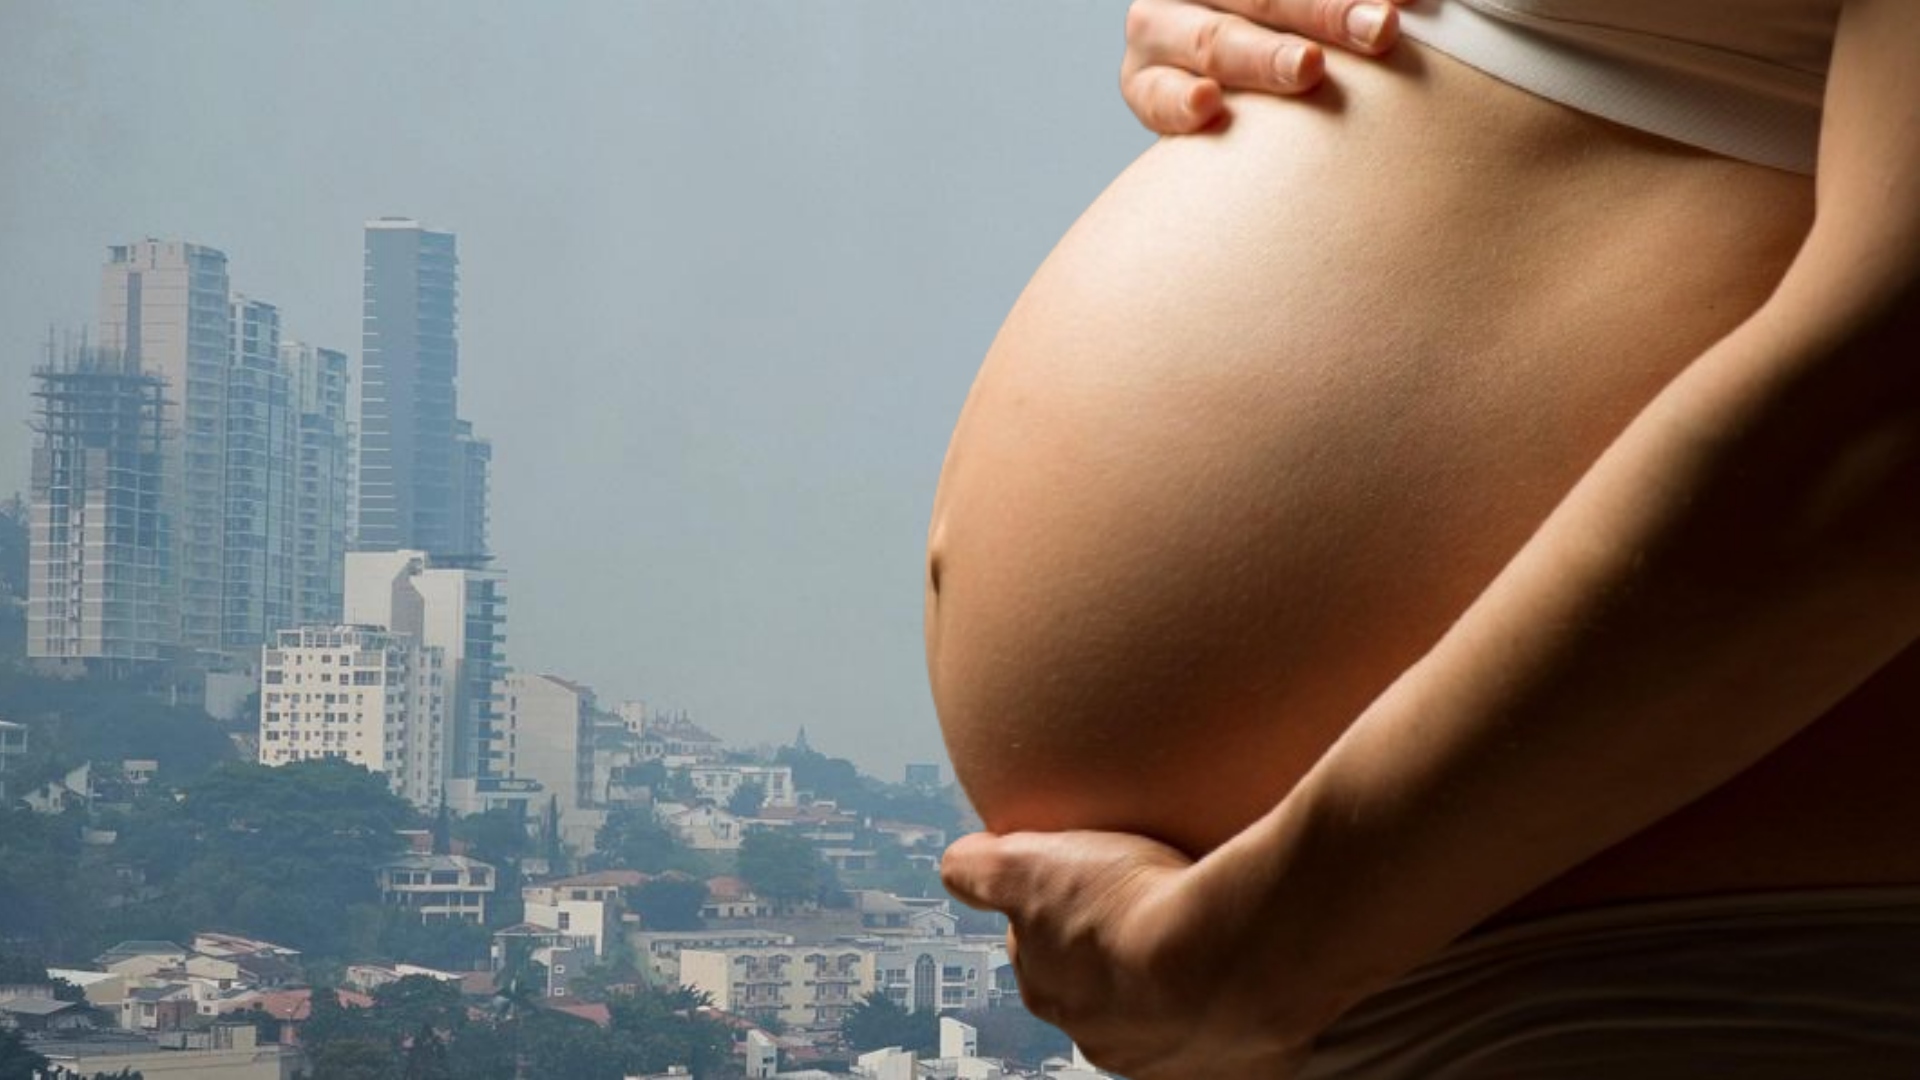 Riesgos y cuidados para mujeres embarazadas ante ola de calor